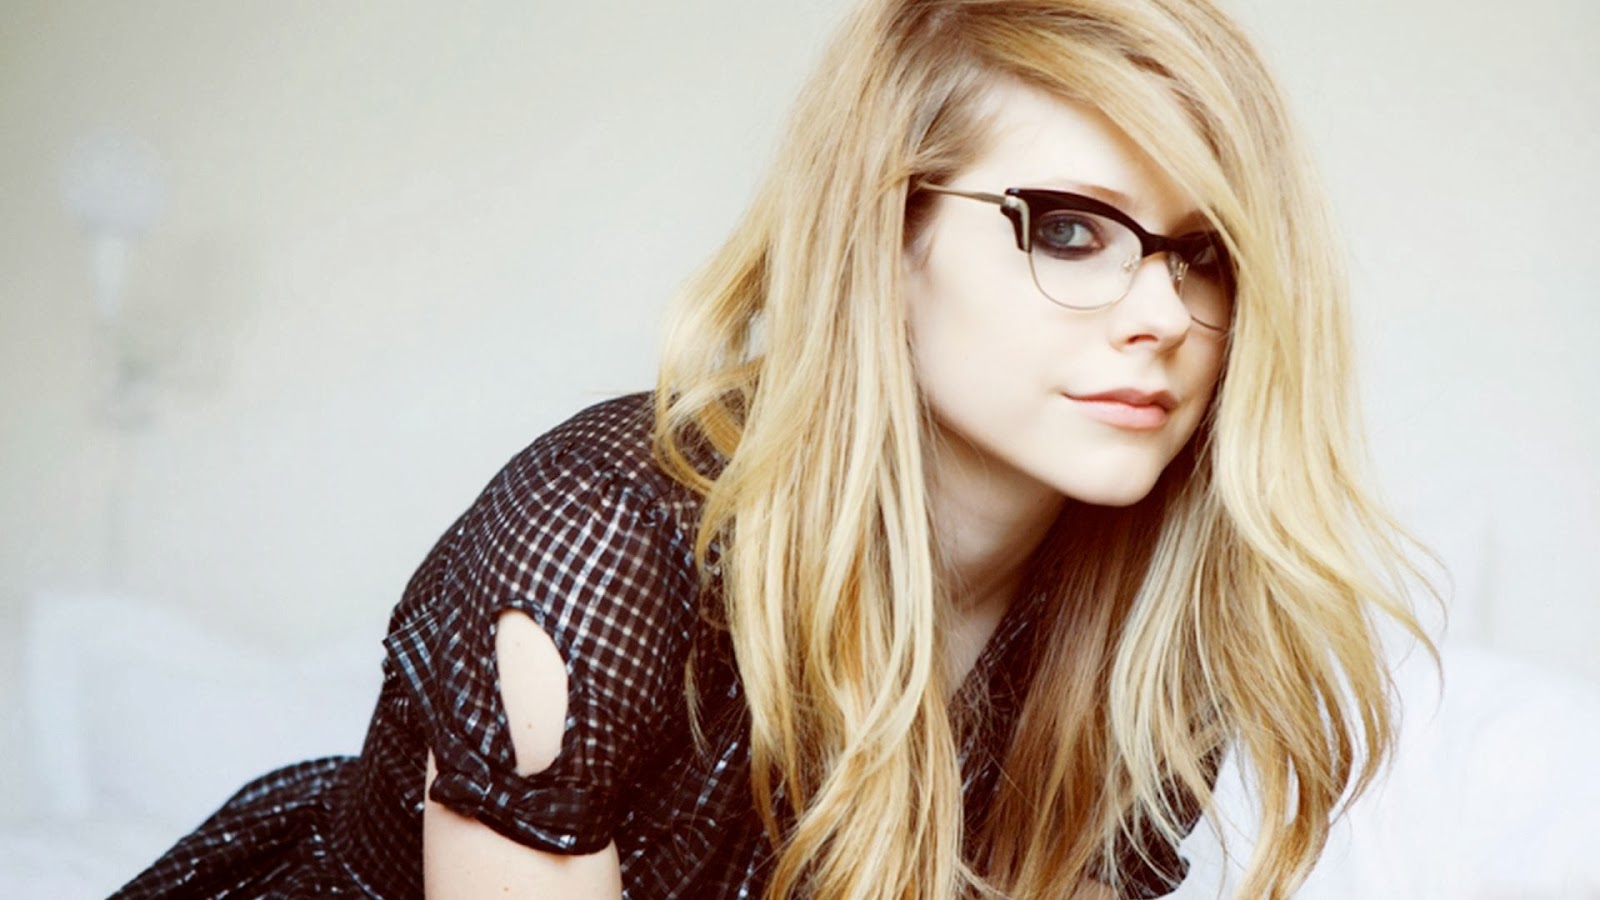 Avril Lavigne Wallpaper Best High